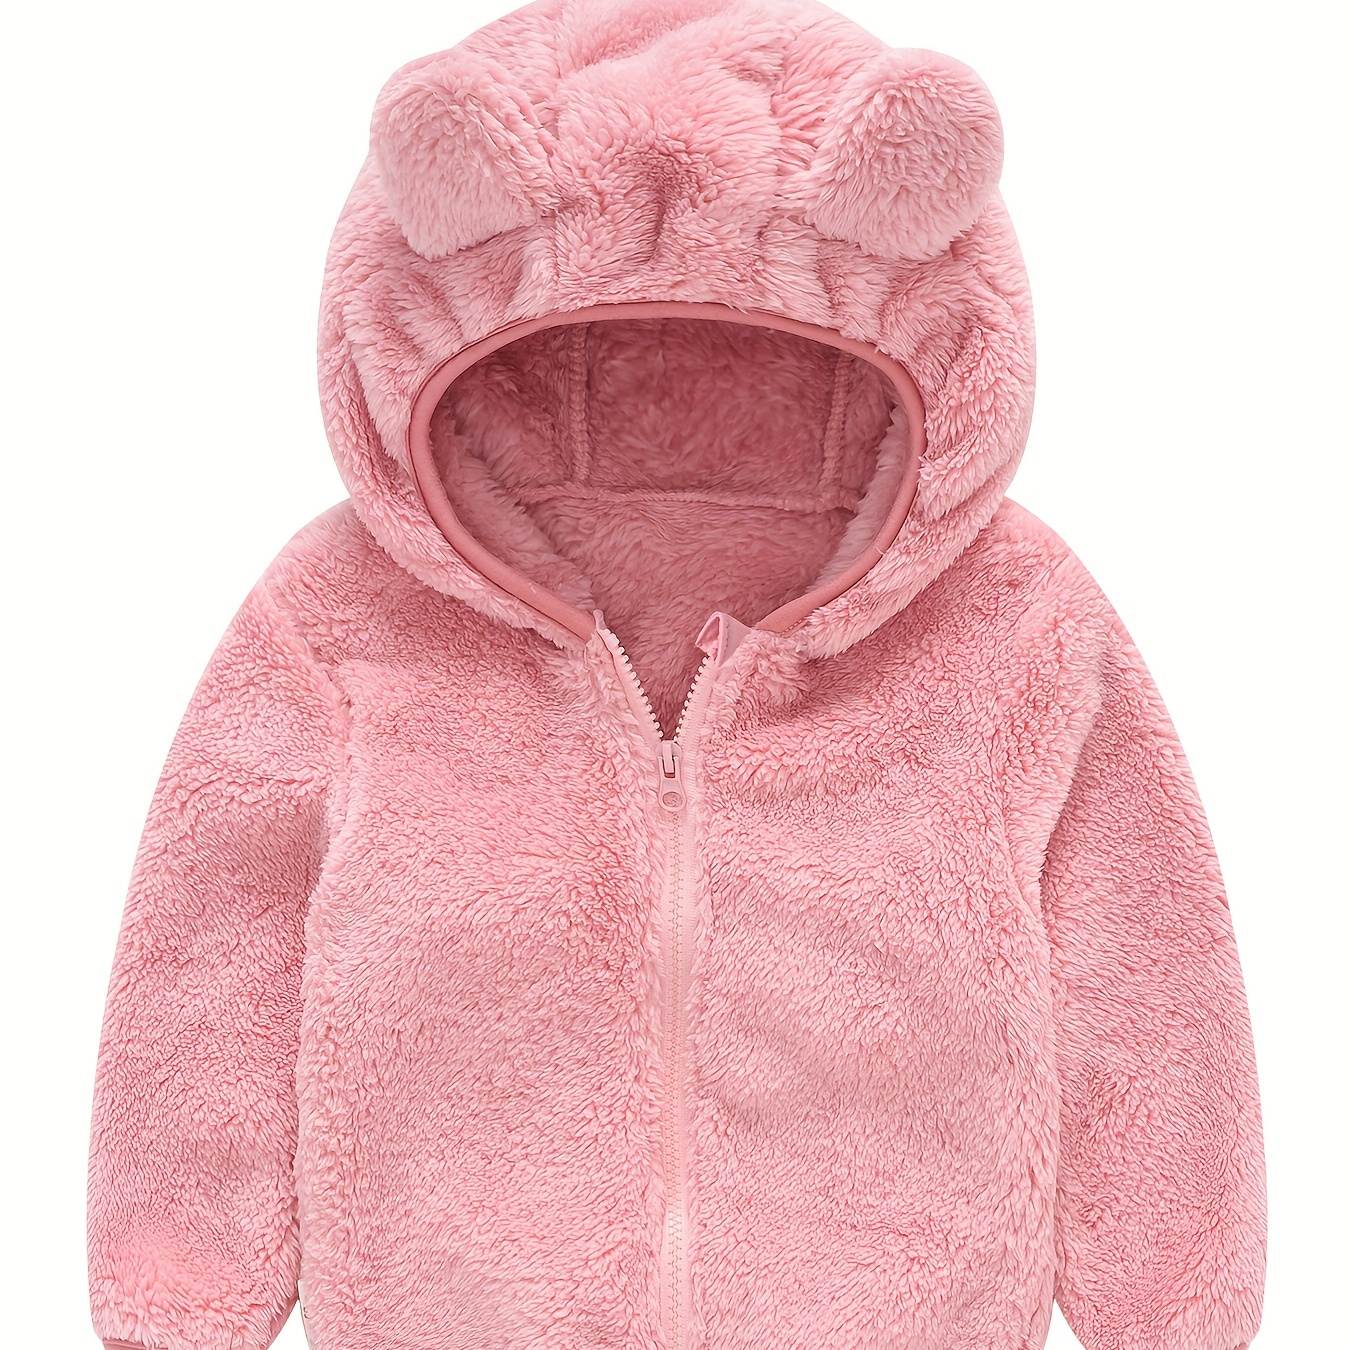 

Toddler Fleece Jacket Baby Boys Girls Hooded Outwear Fall Winter Clothing Cute Bear Ears Zip Up Coat